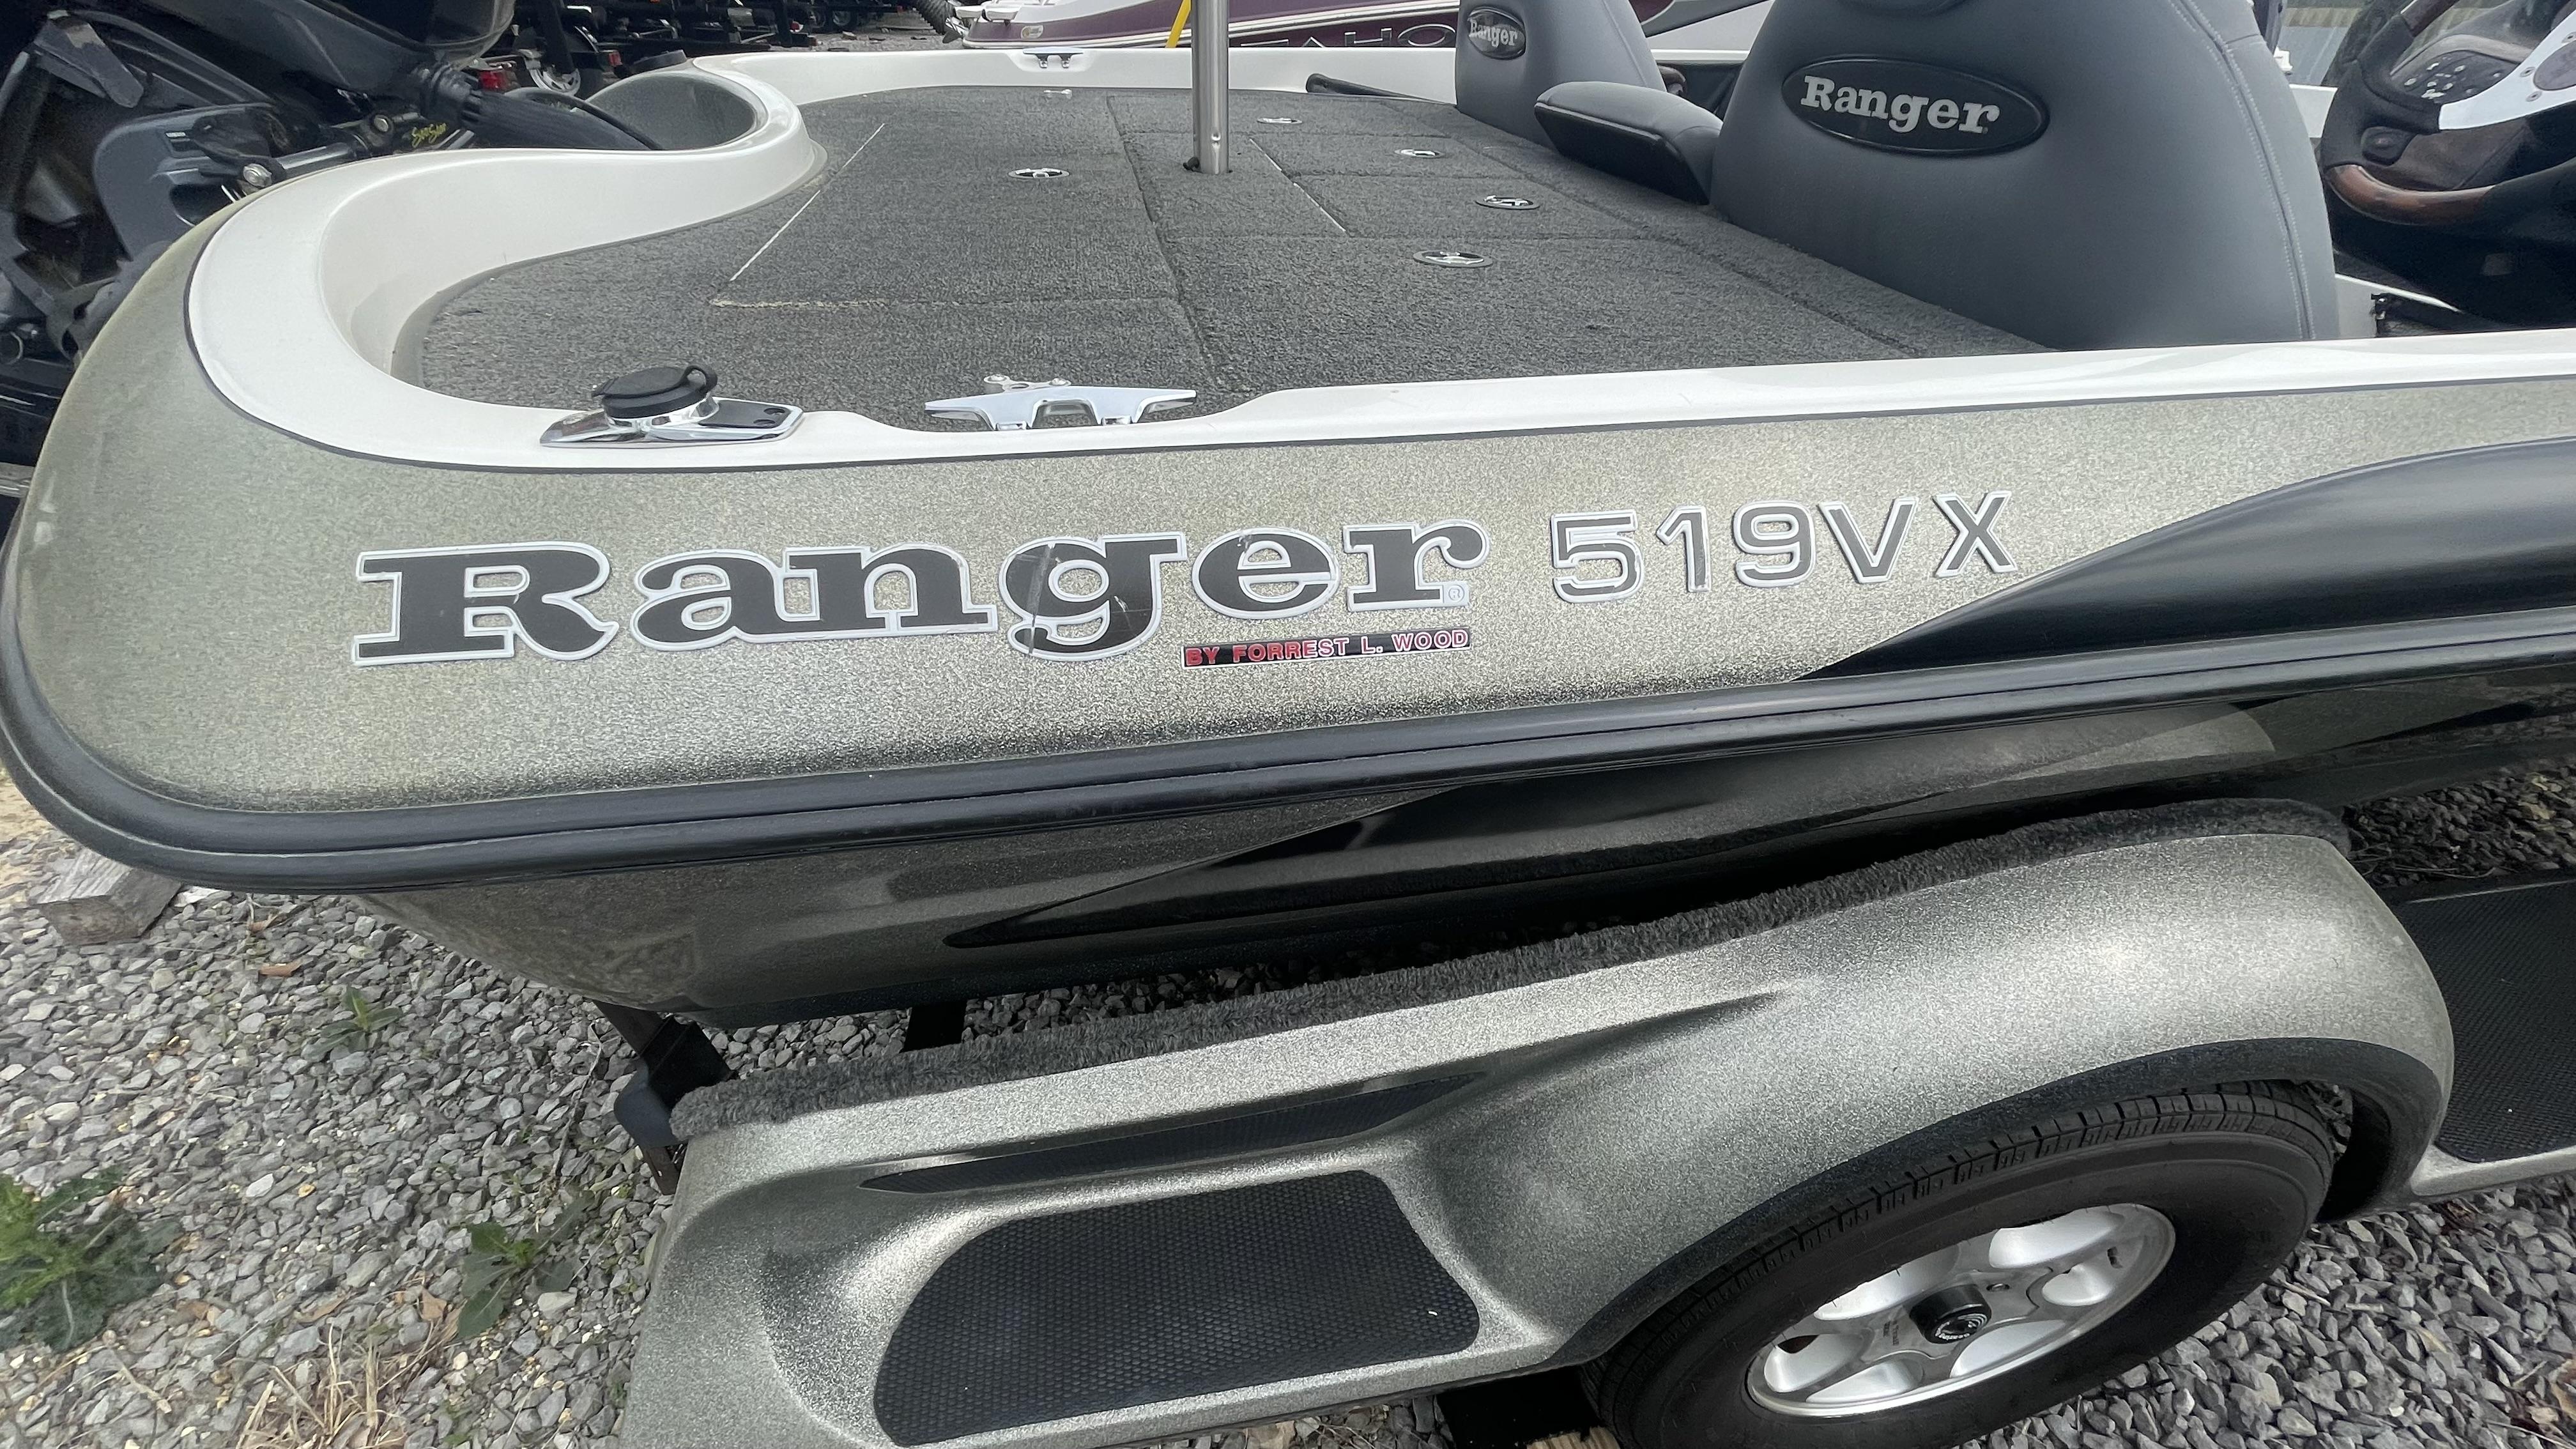 2003 Ranger 519 VX